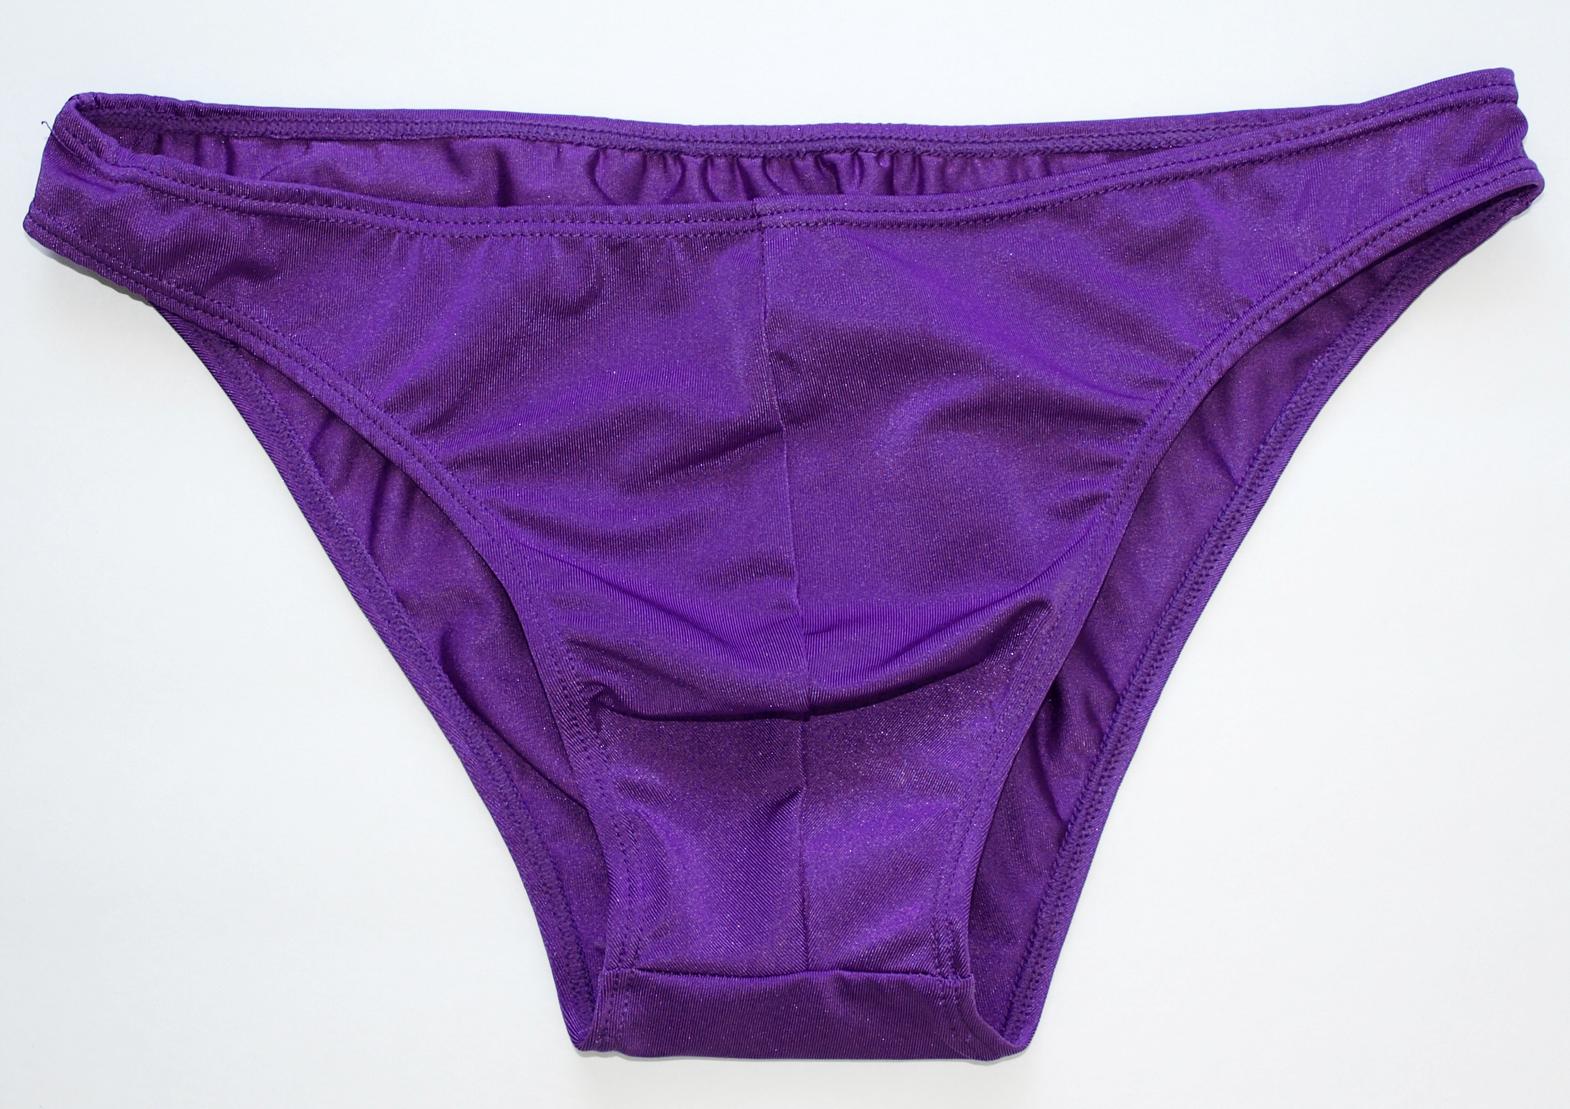 G317 Mens Underwear Bikinis Unlined Swimwear S M L | eBay